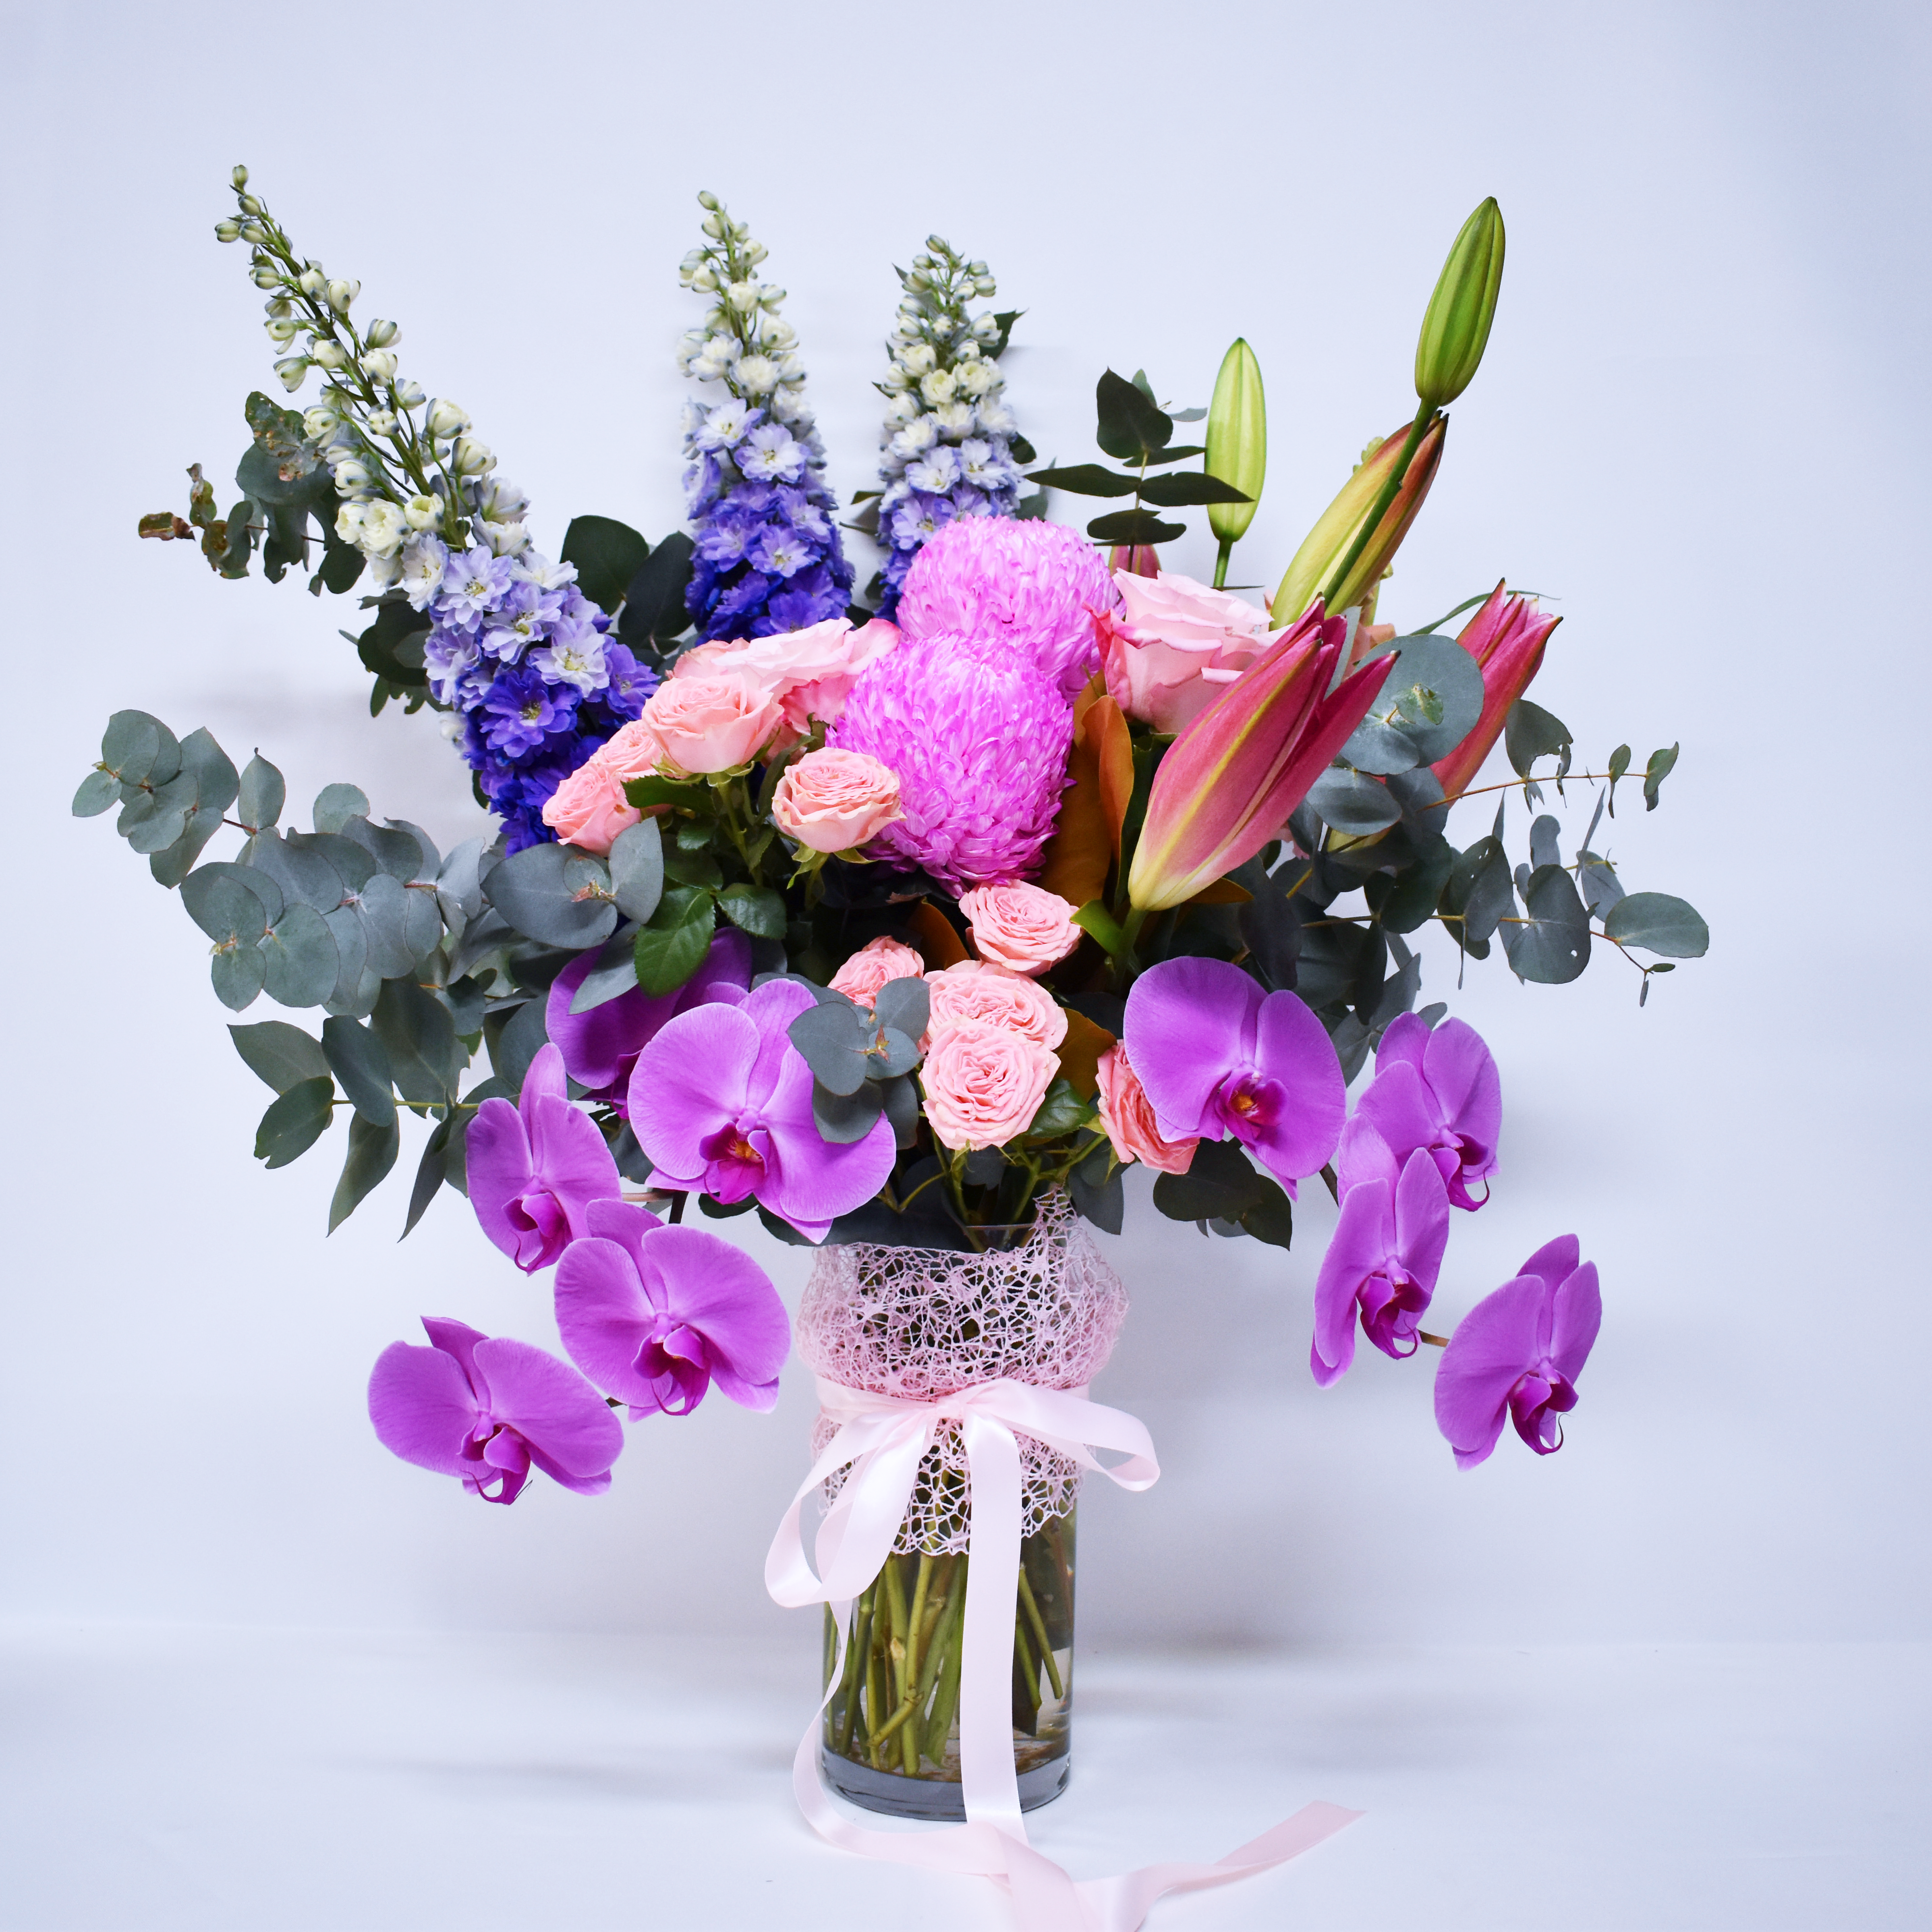 Deluxe Sweet Dreams Bouquet + Vase!